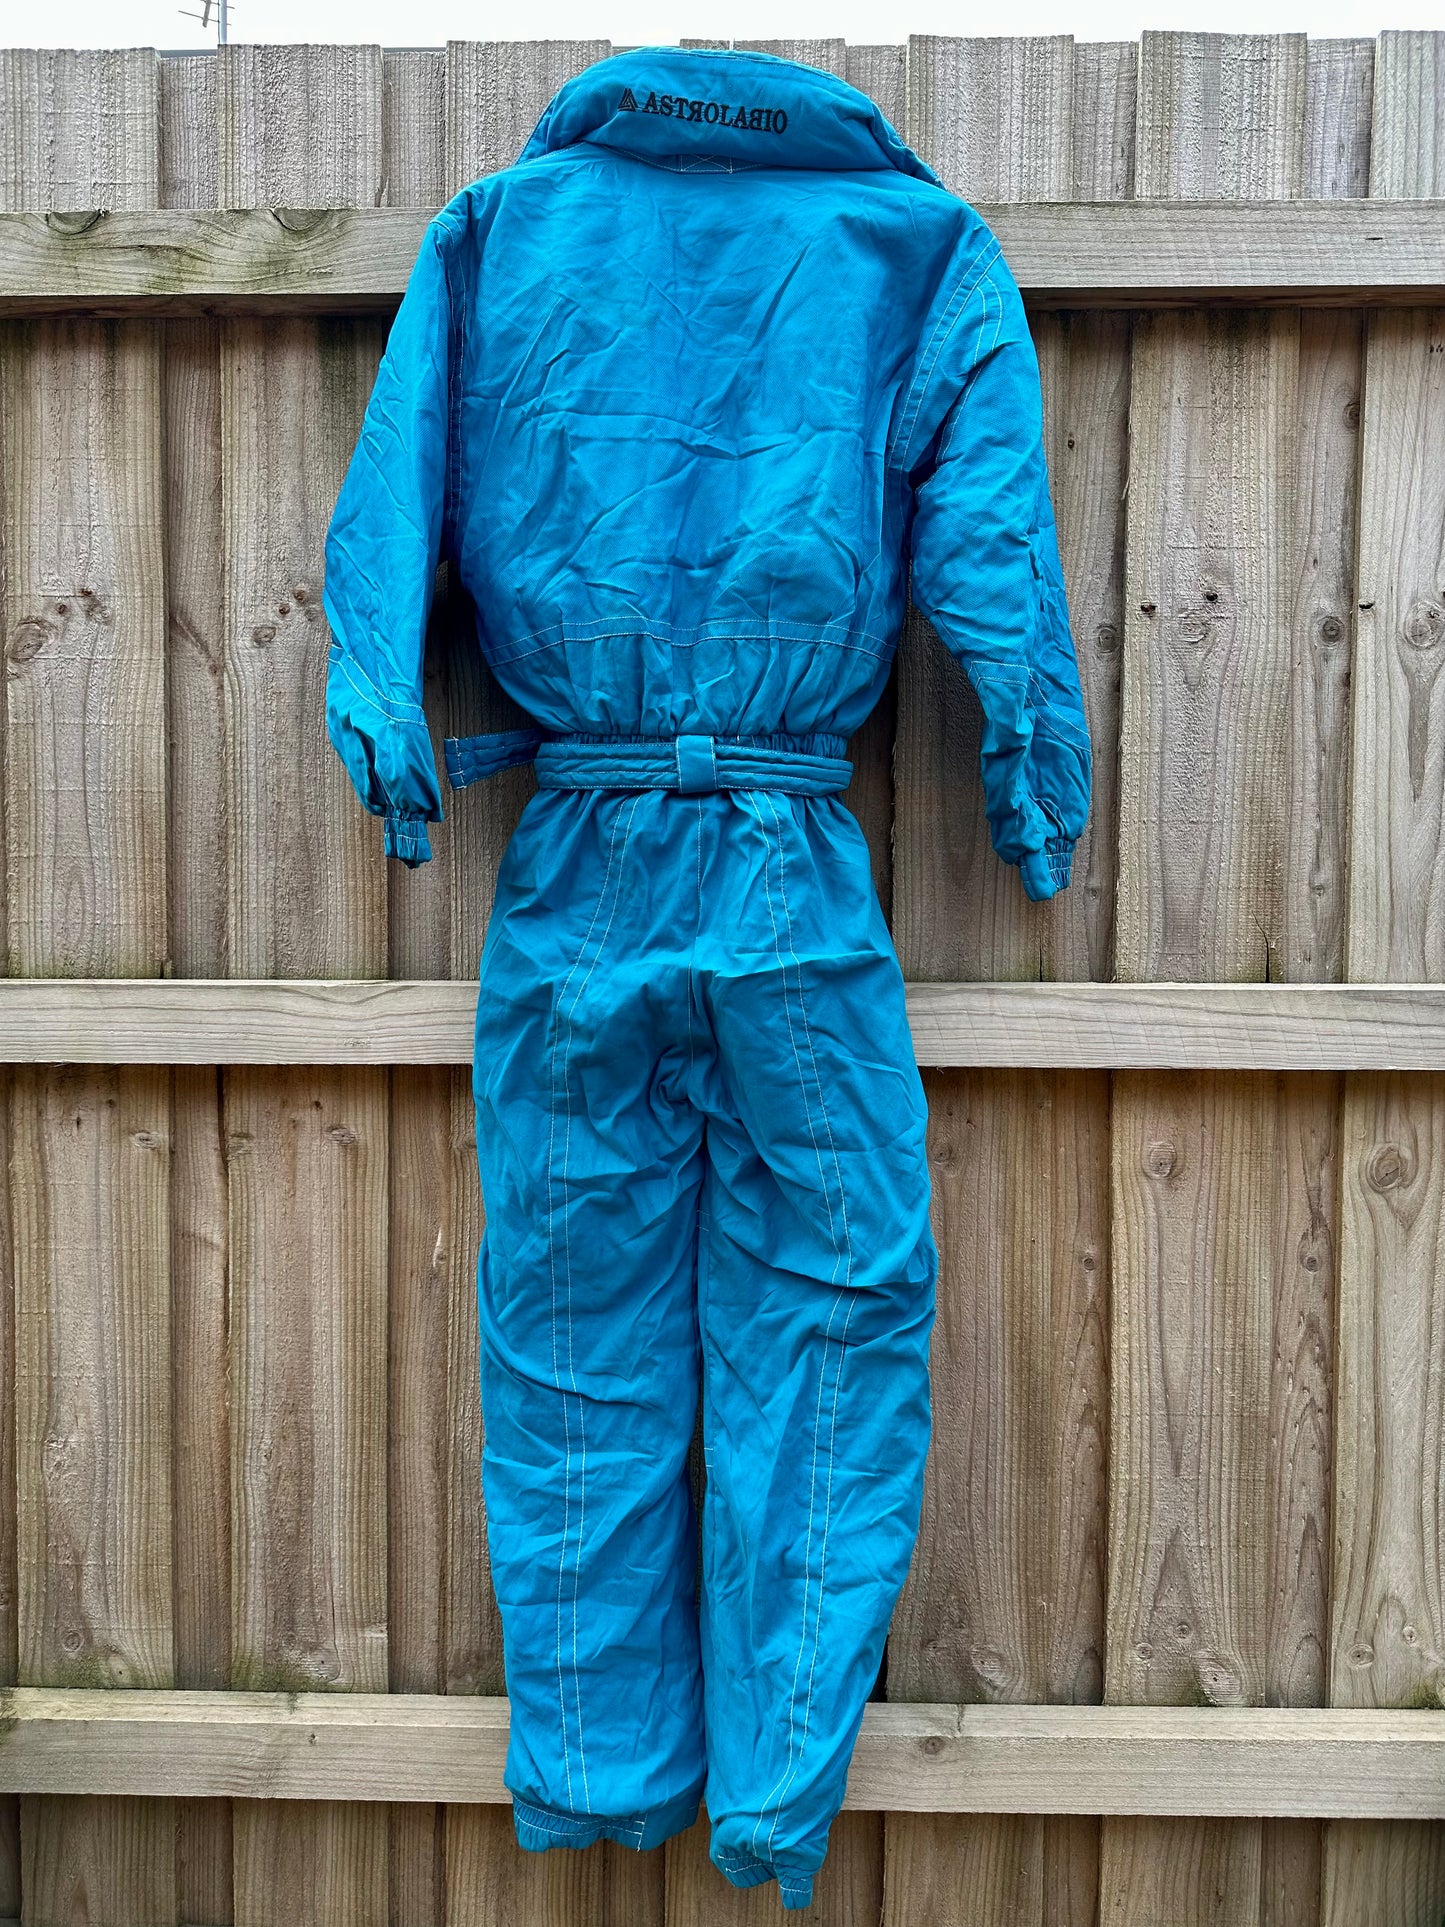 Blue Contrast Stitch Retro Snow Suit